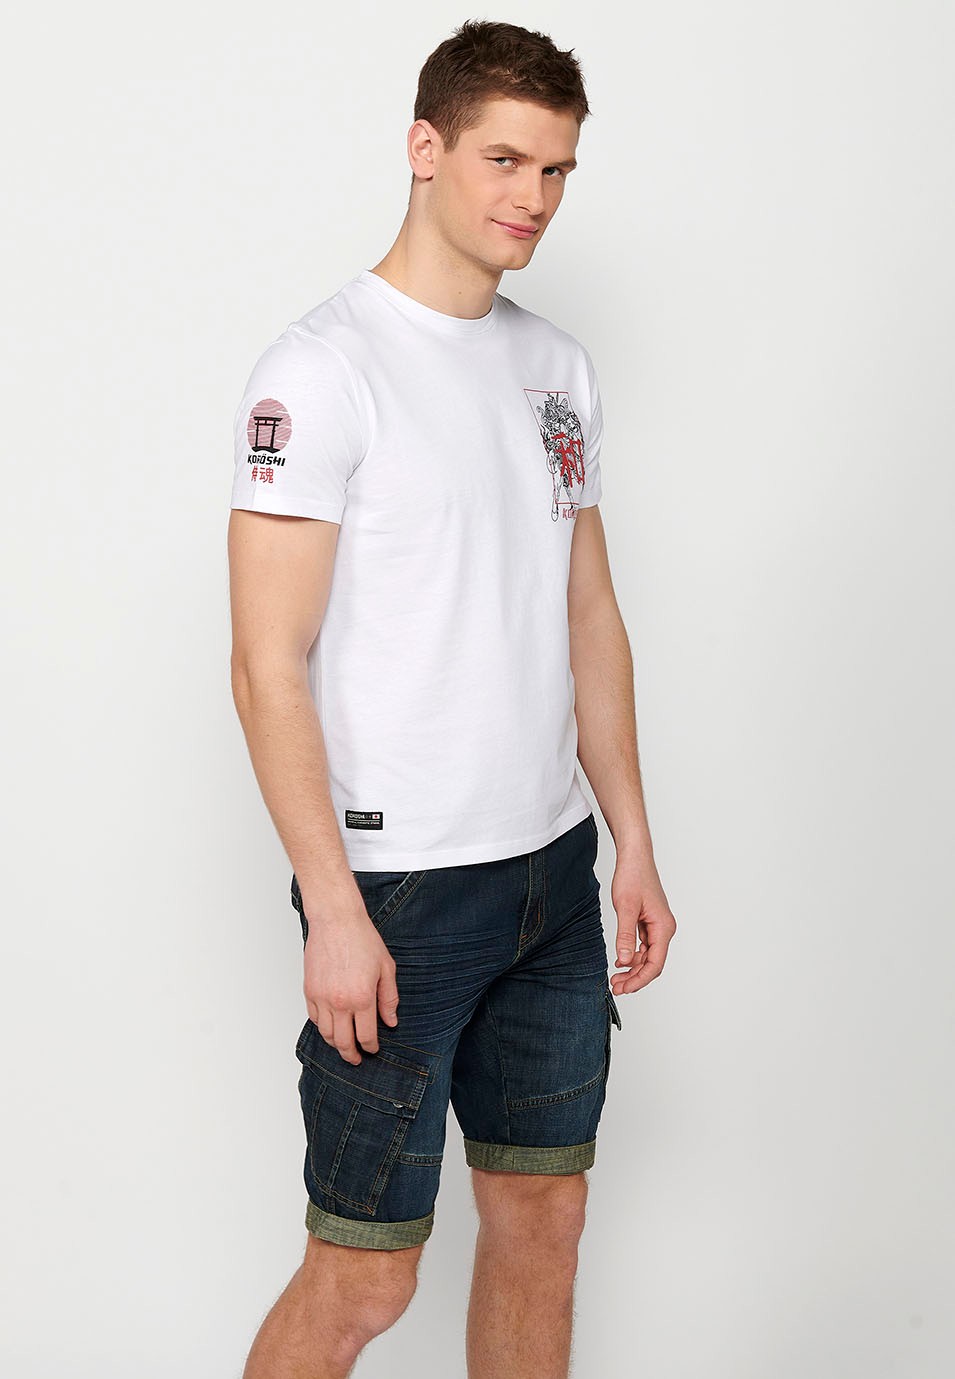 Samarreta màniga curta amb estampat a l'esquena color blanc per a home